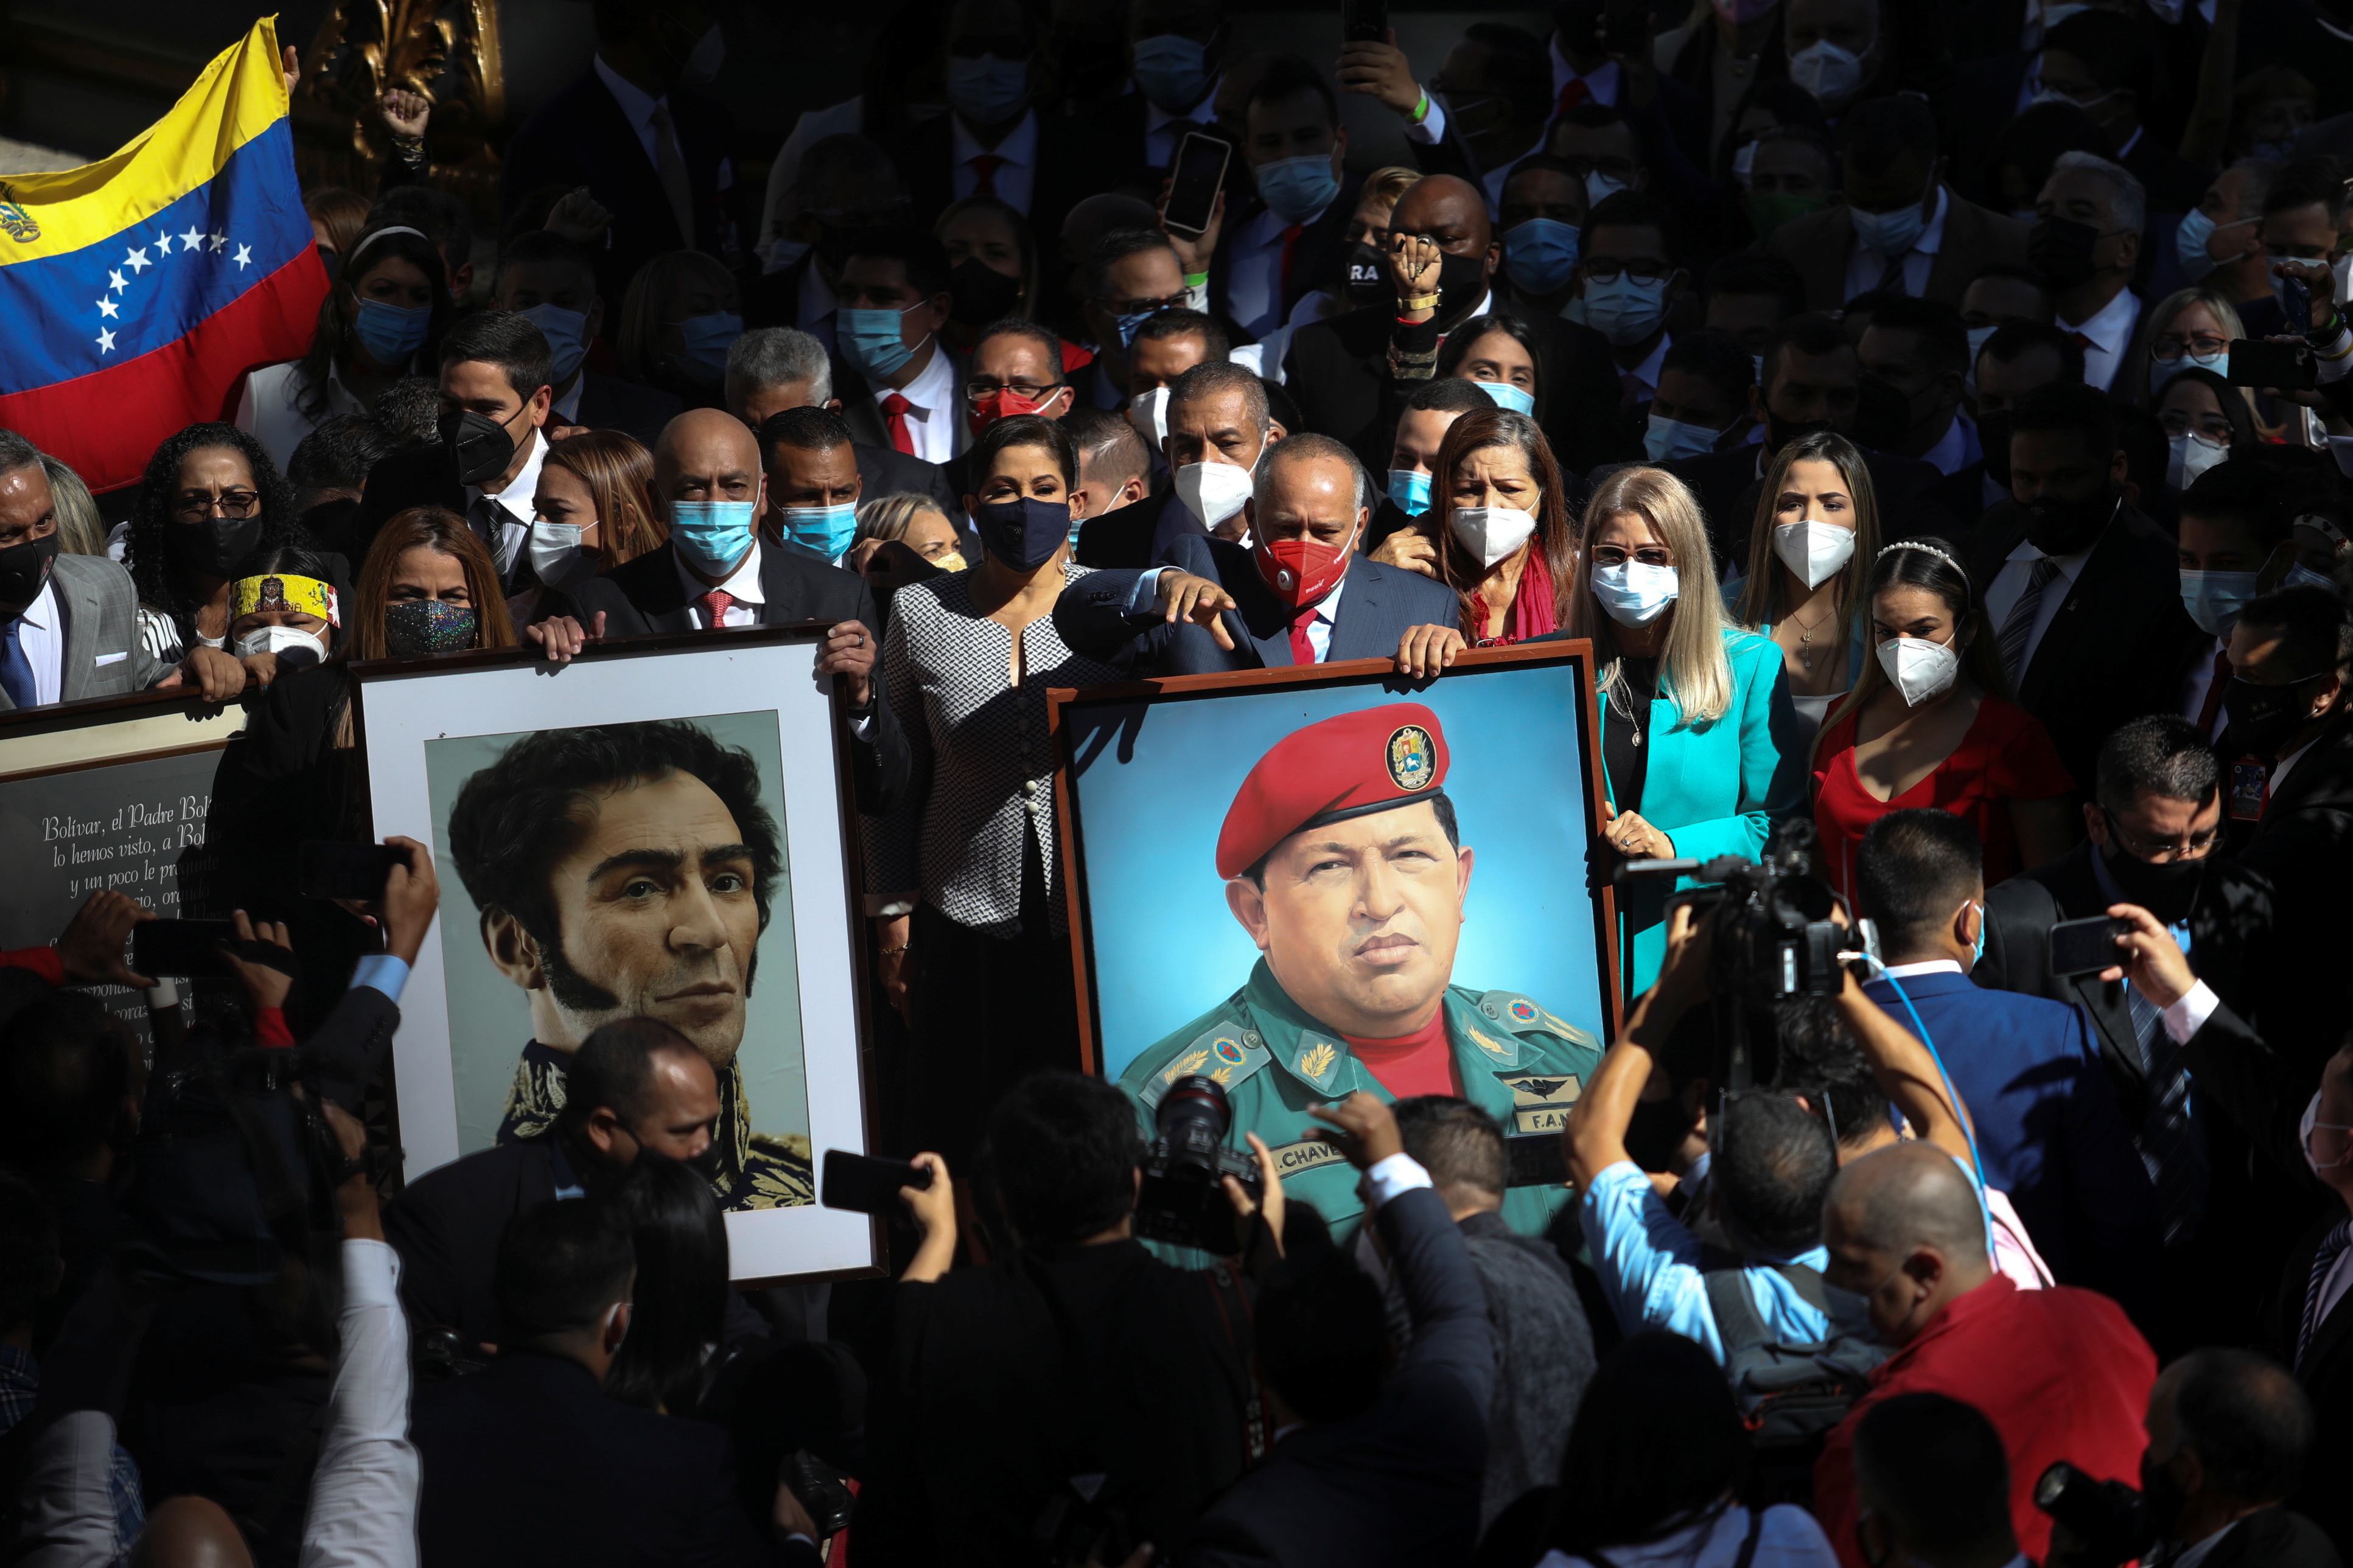 Asamblea fraudulenta de Maduro regresa los cuadros de Chávez y Bolívar al Parlamento venezolano #5Ene (FOTOS)